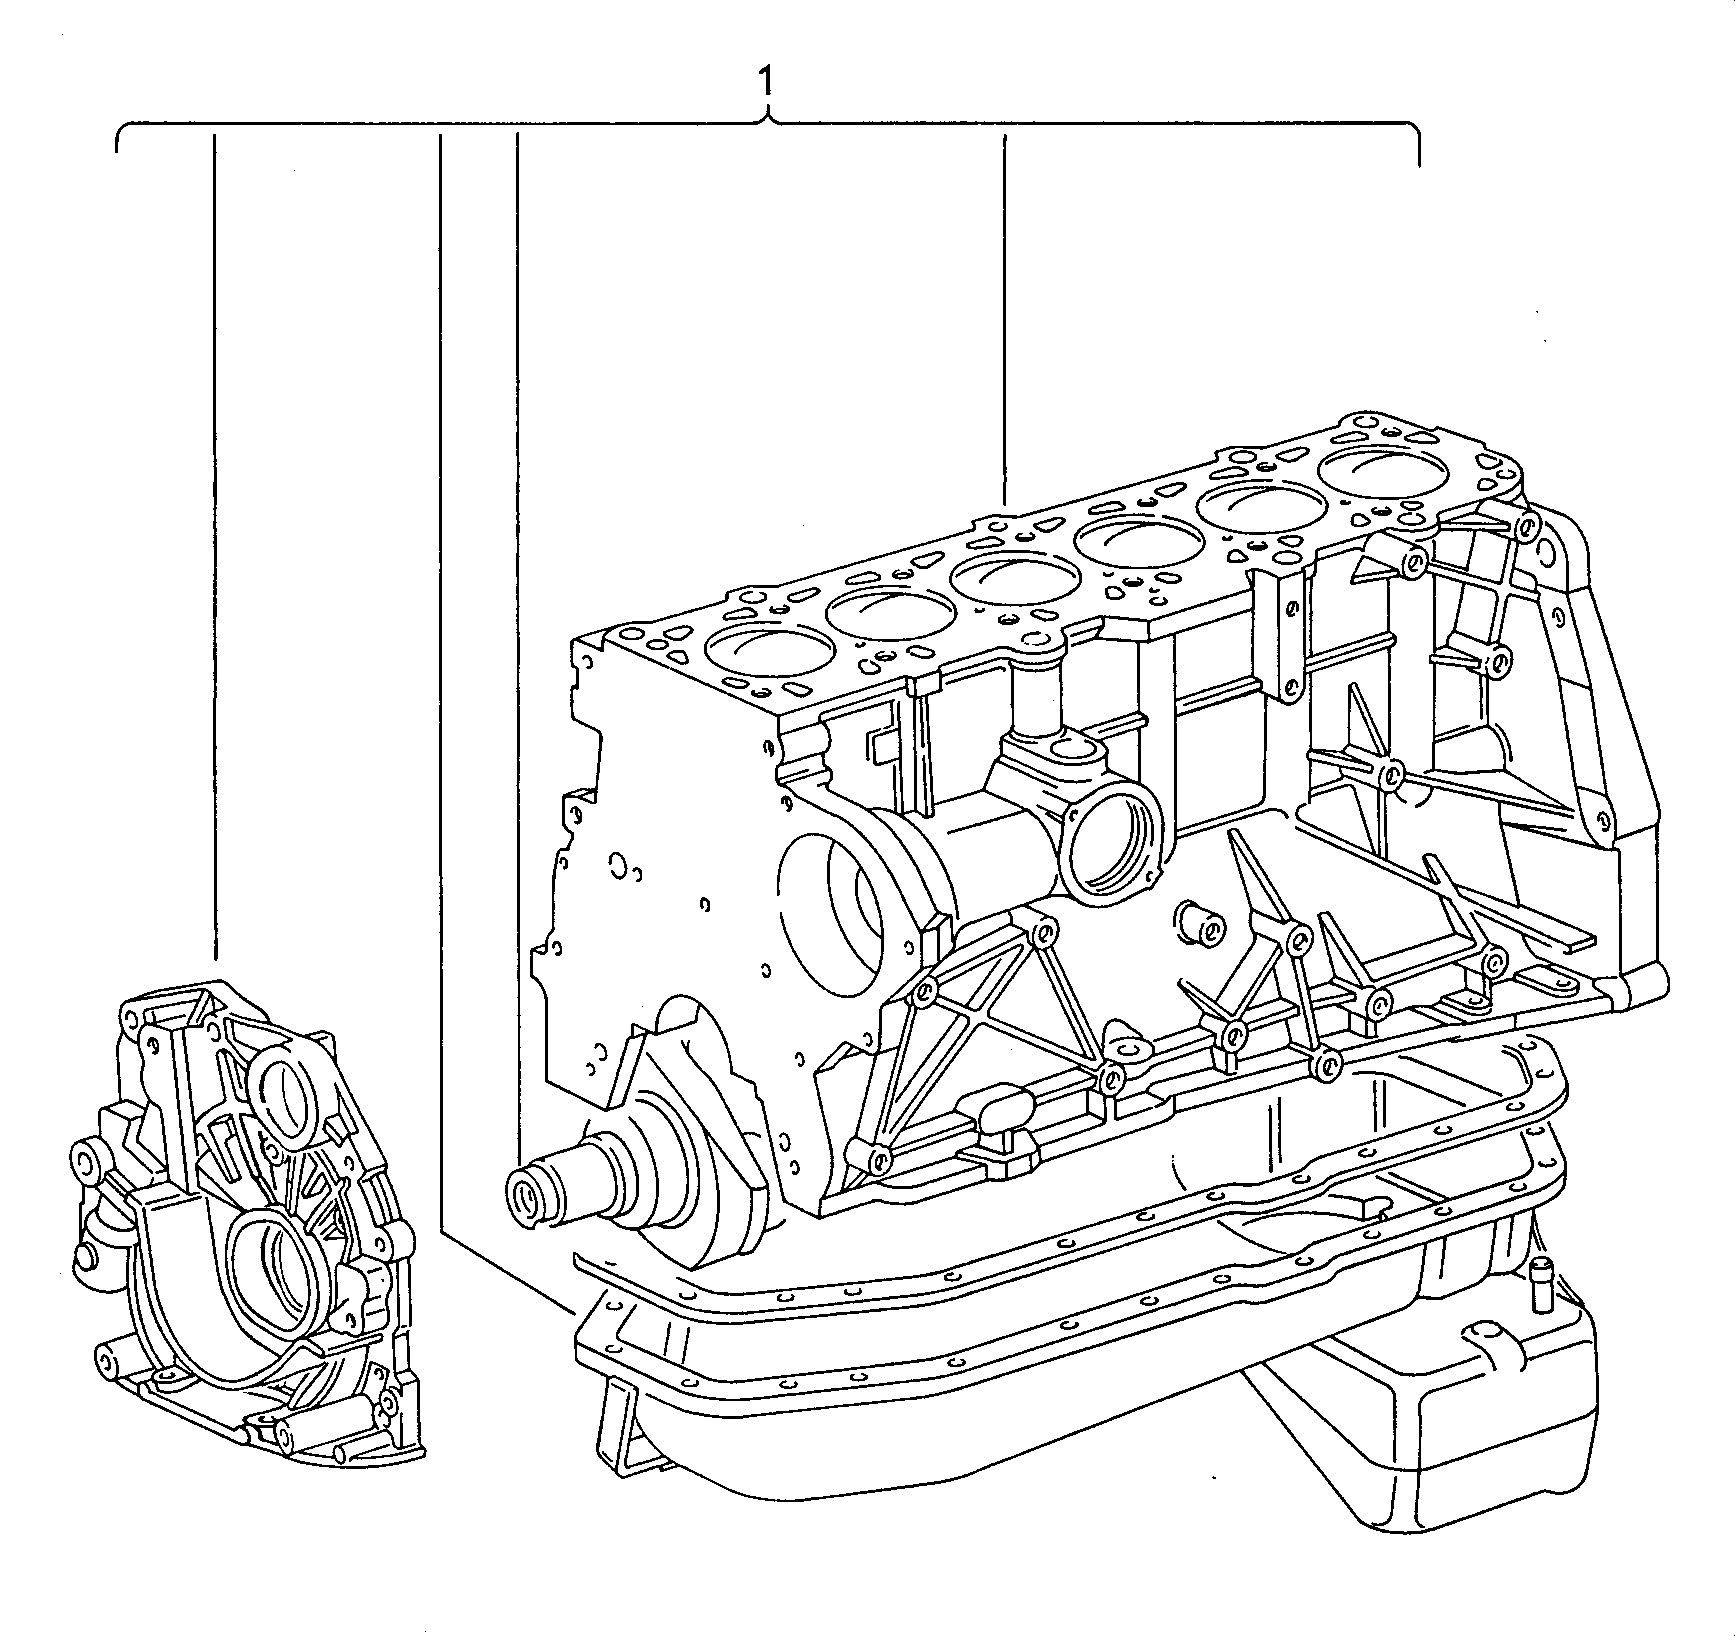 1012 7059 - Diesel-Industrie-Motore - imd